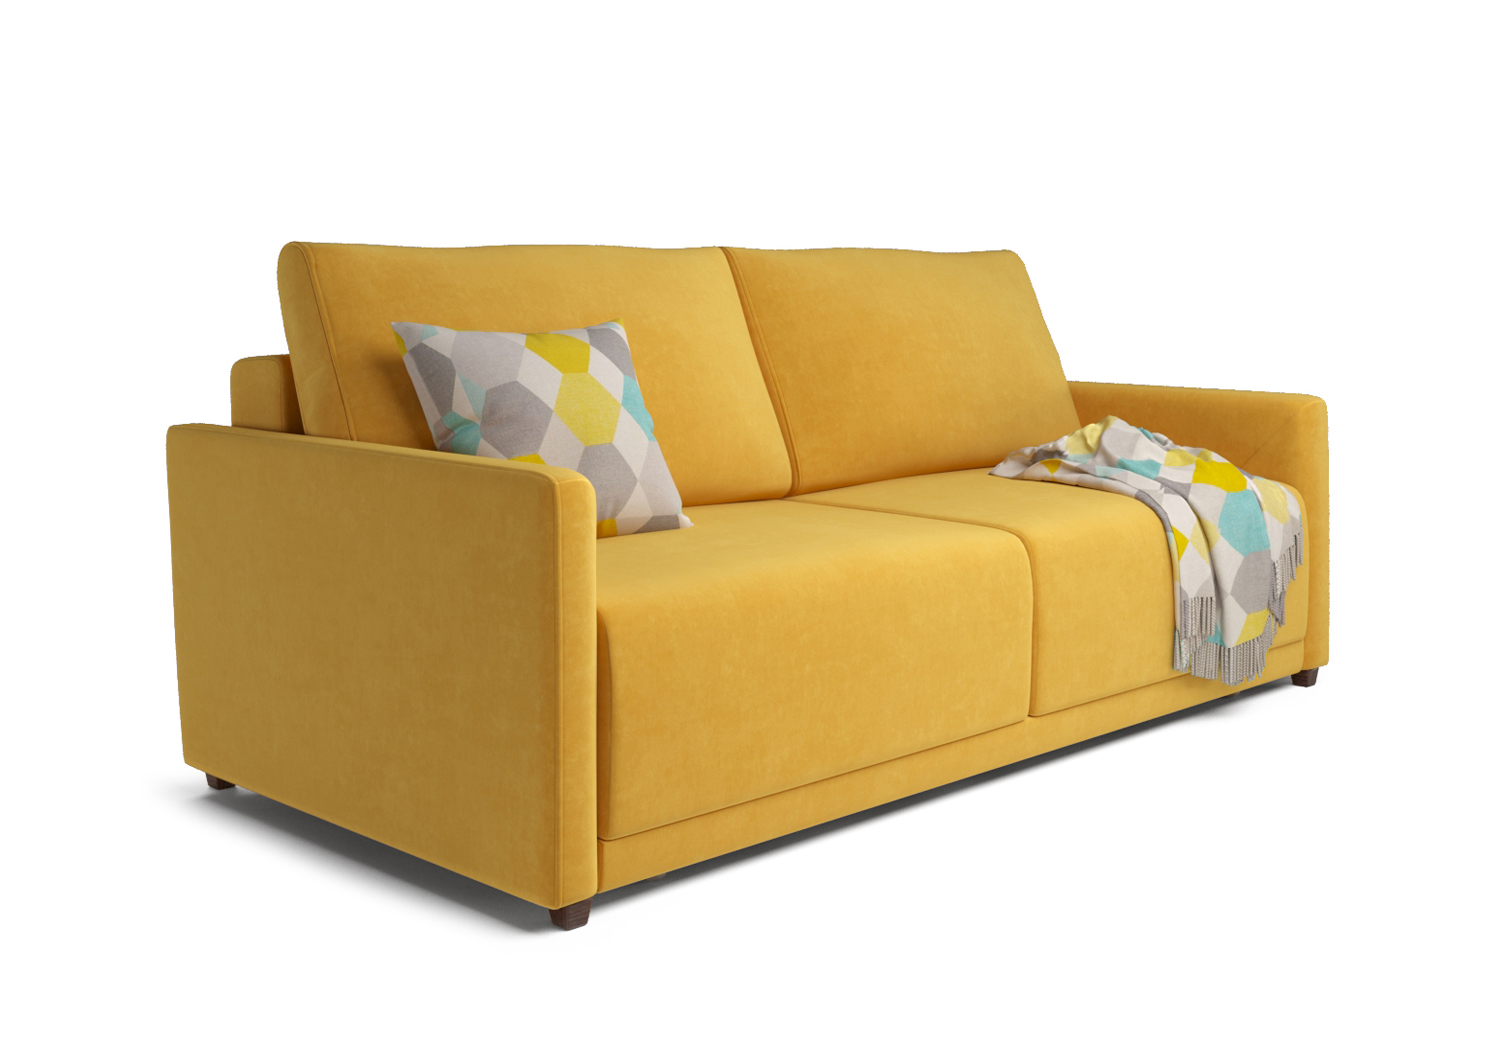 Адель, прямой диван, Miss 83 ткань Шенилл цвет Желтый механизм трансформации Еврокнижка